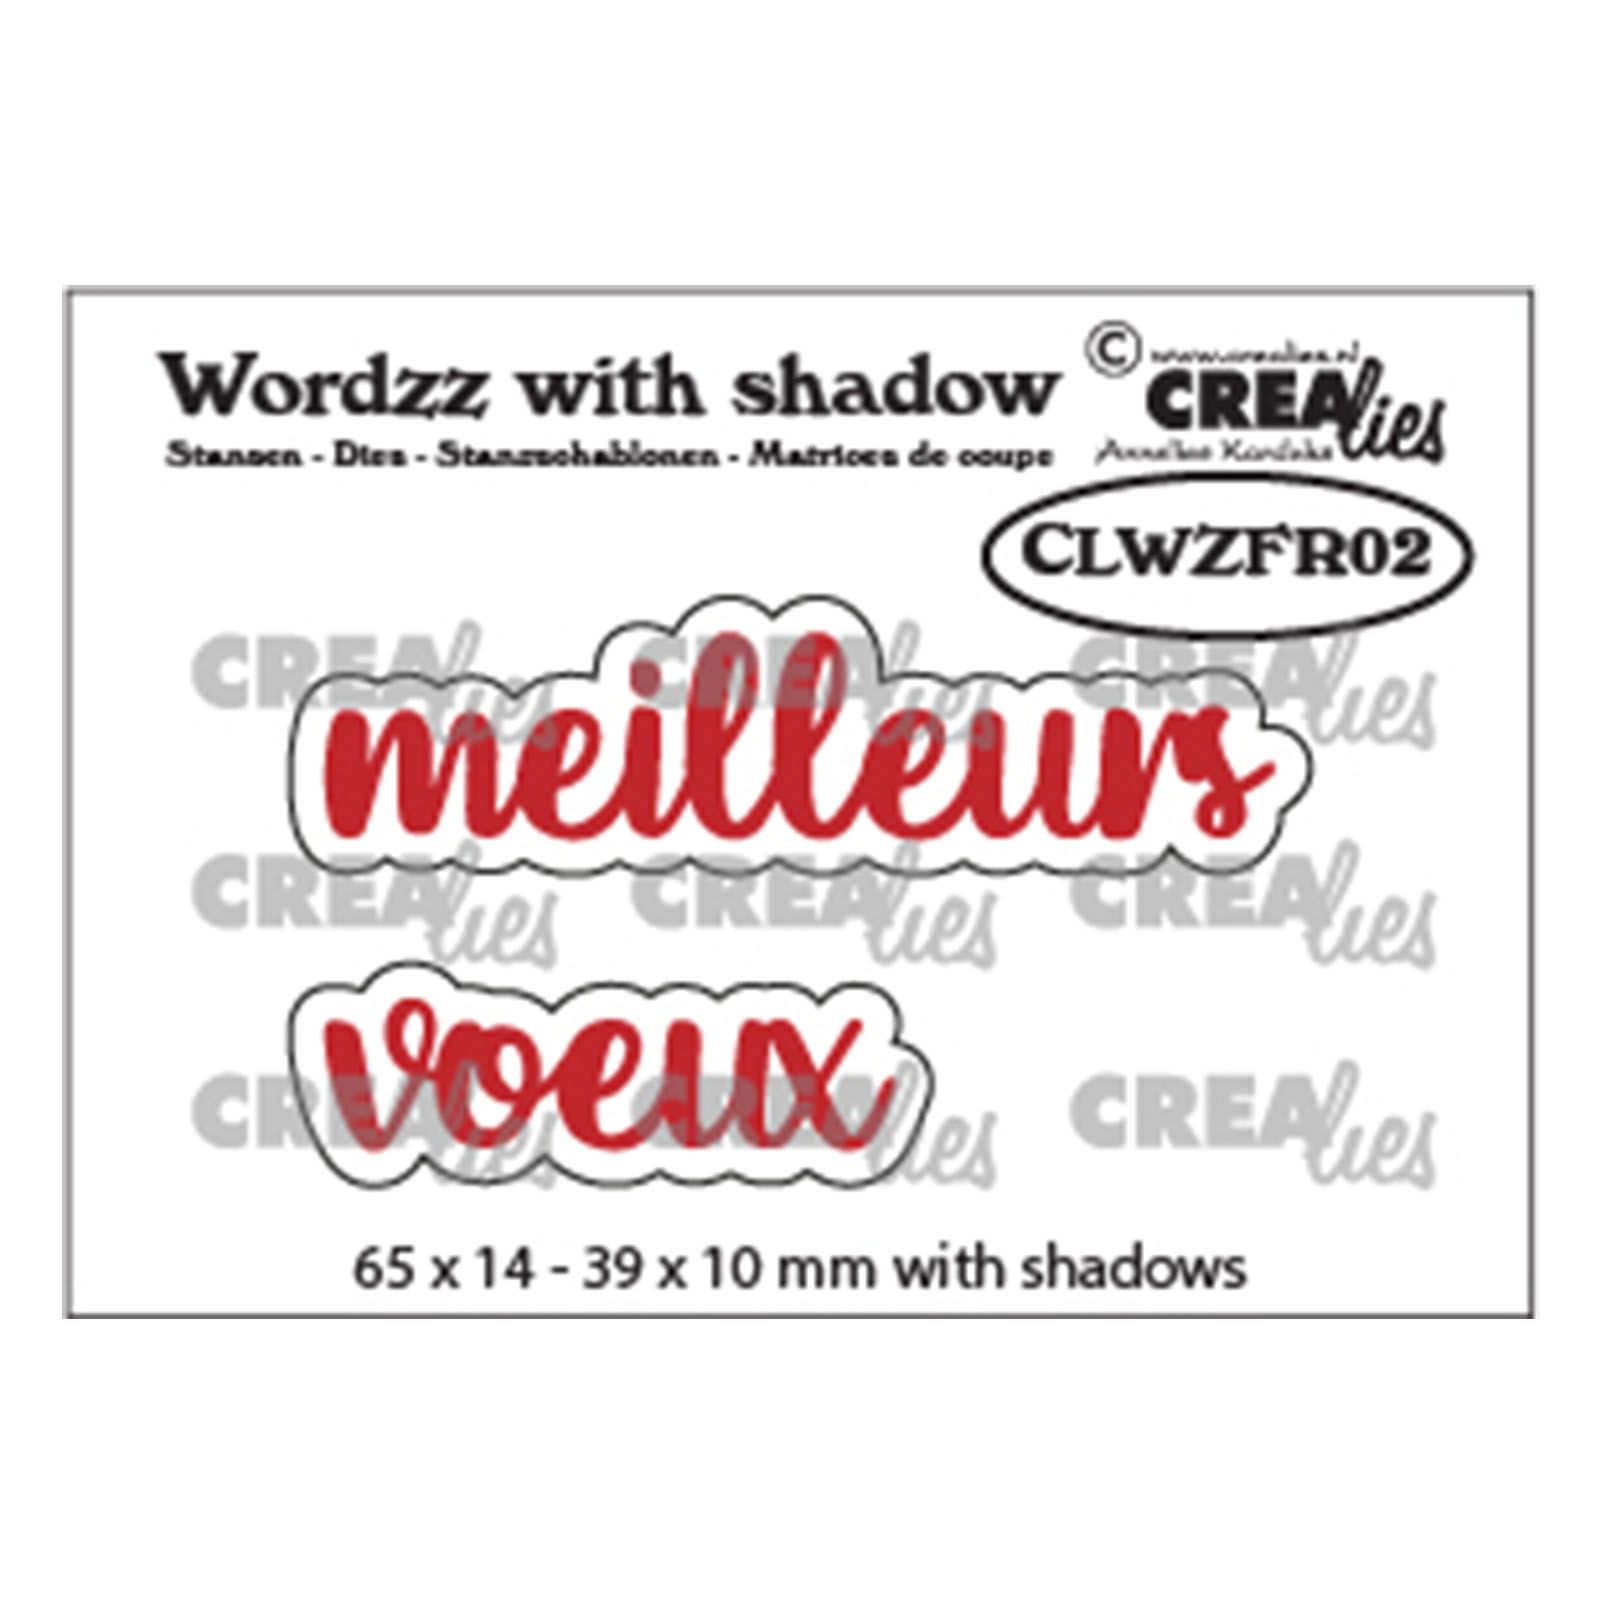 Crealies • Wordzz with shadow dies Meilleurs voeux